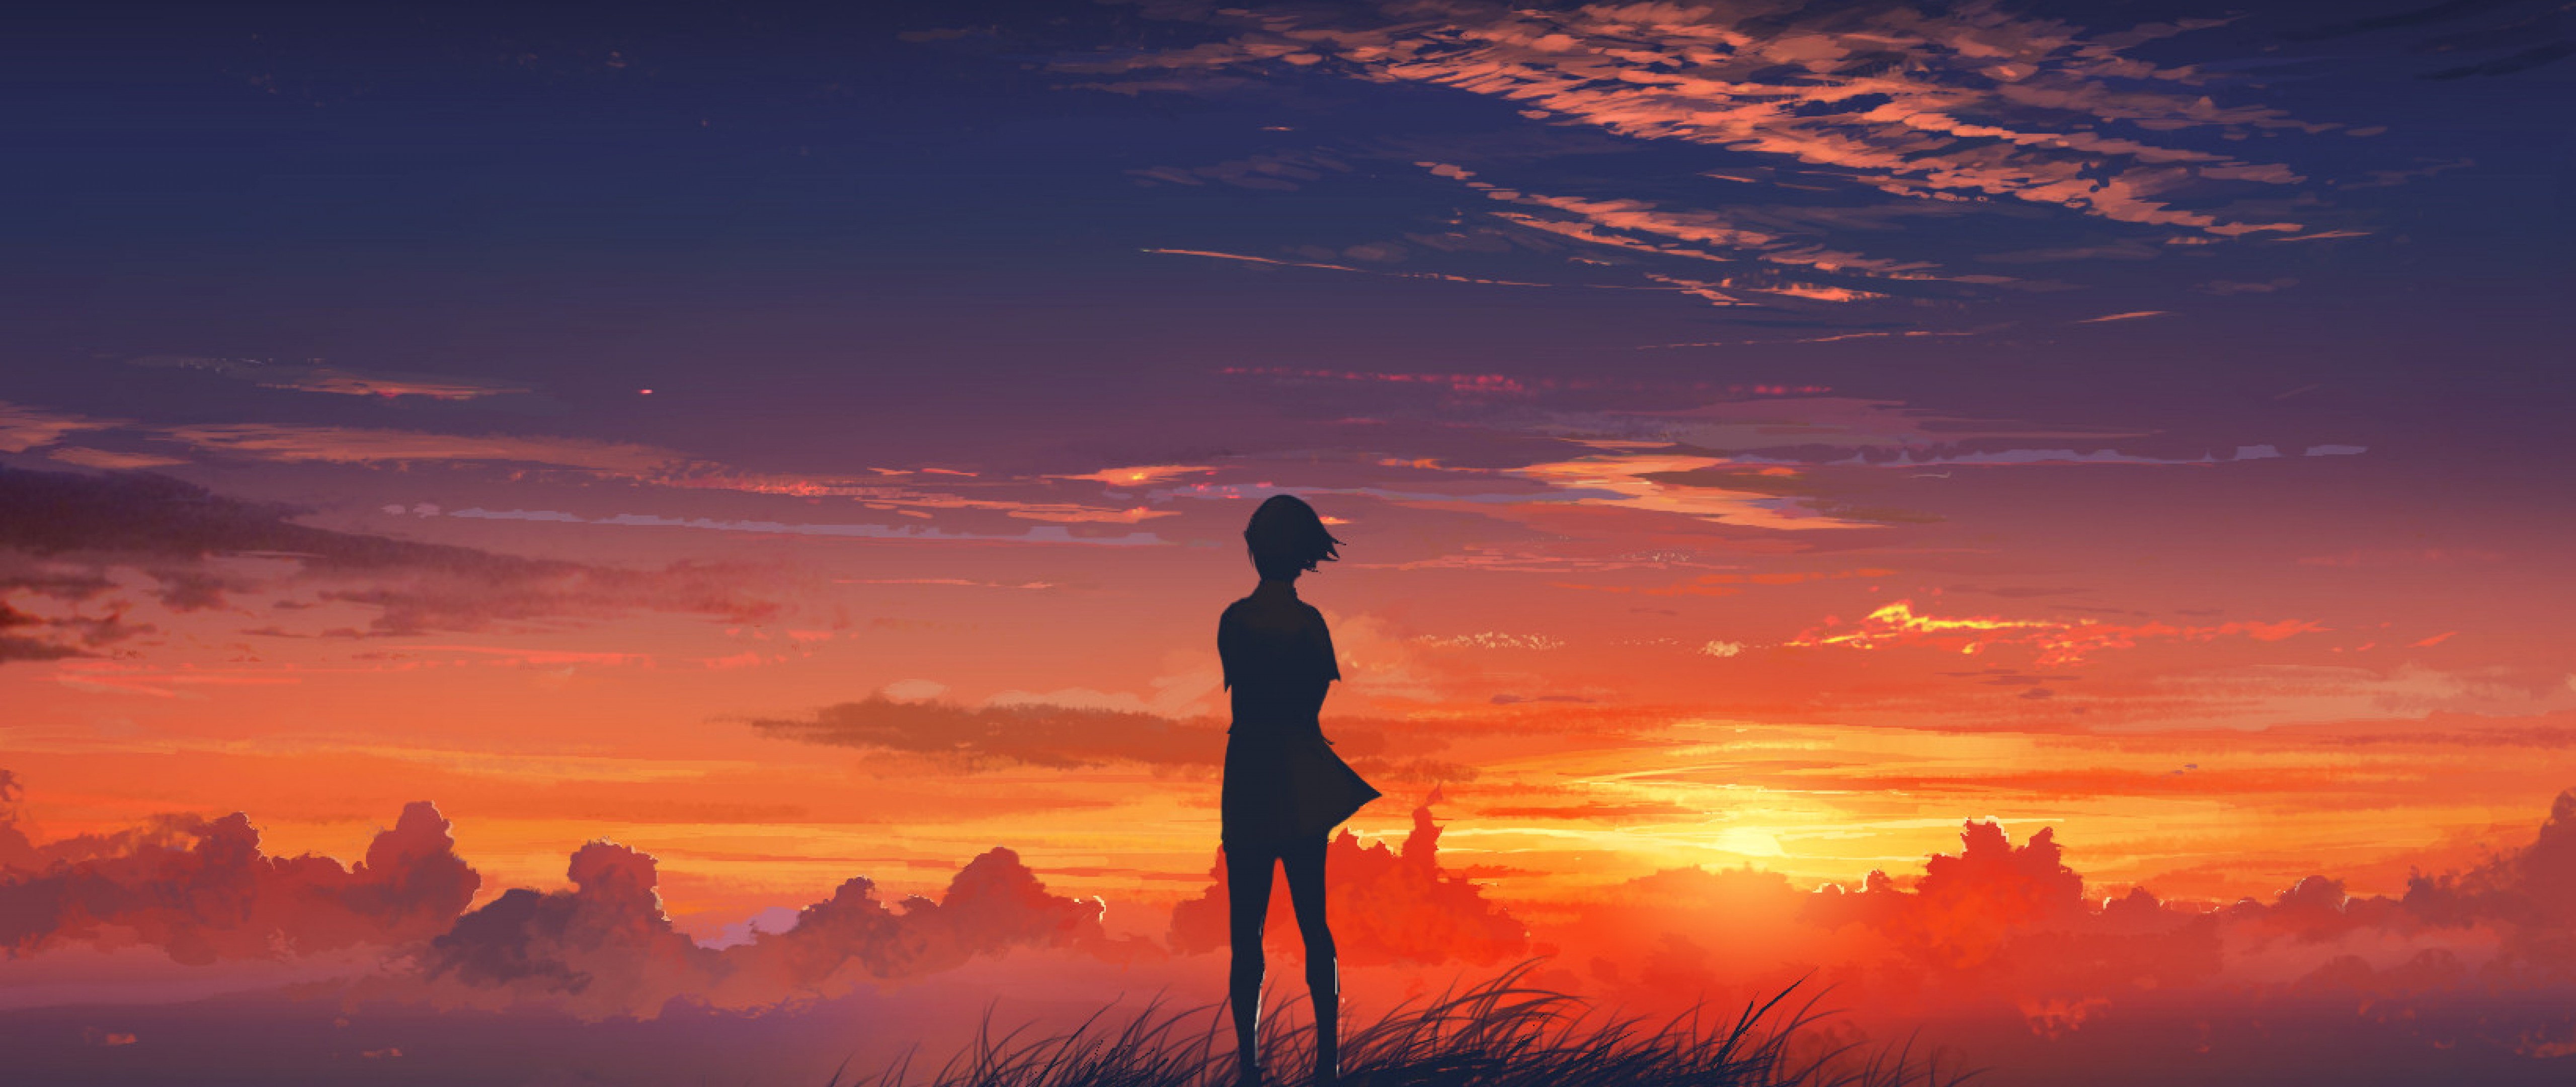 Sunset anime girl HD Wallpaper